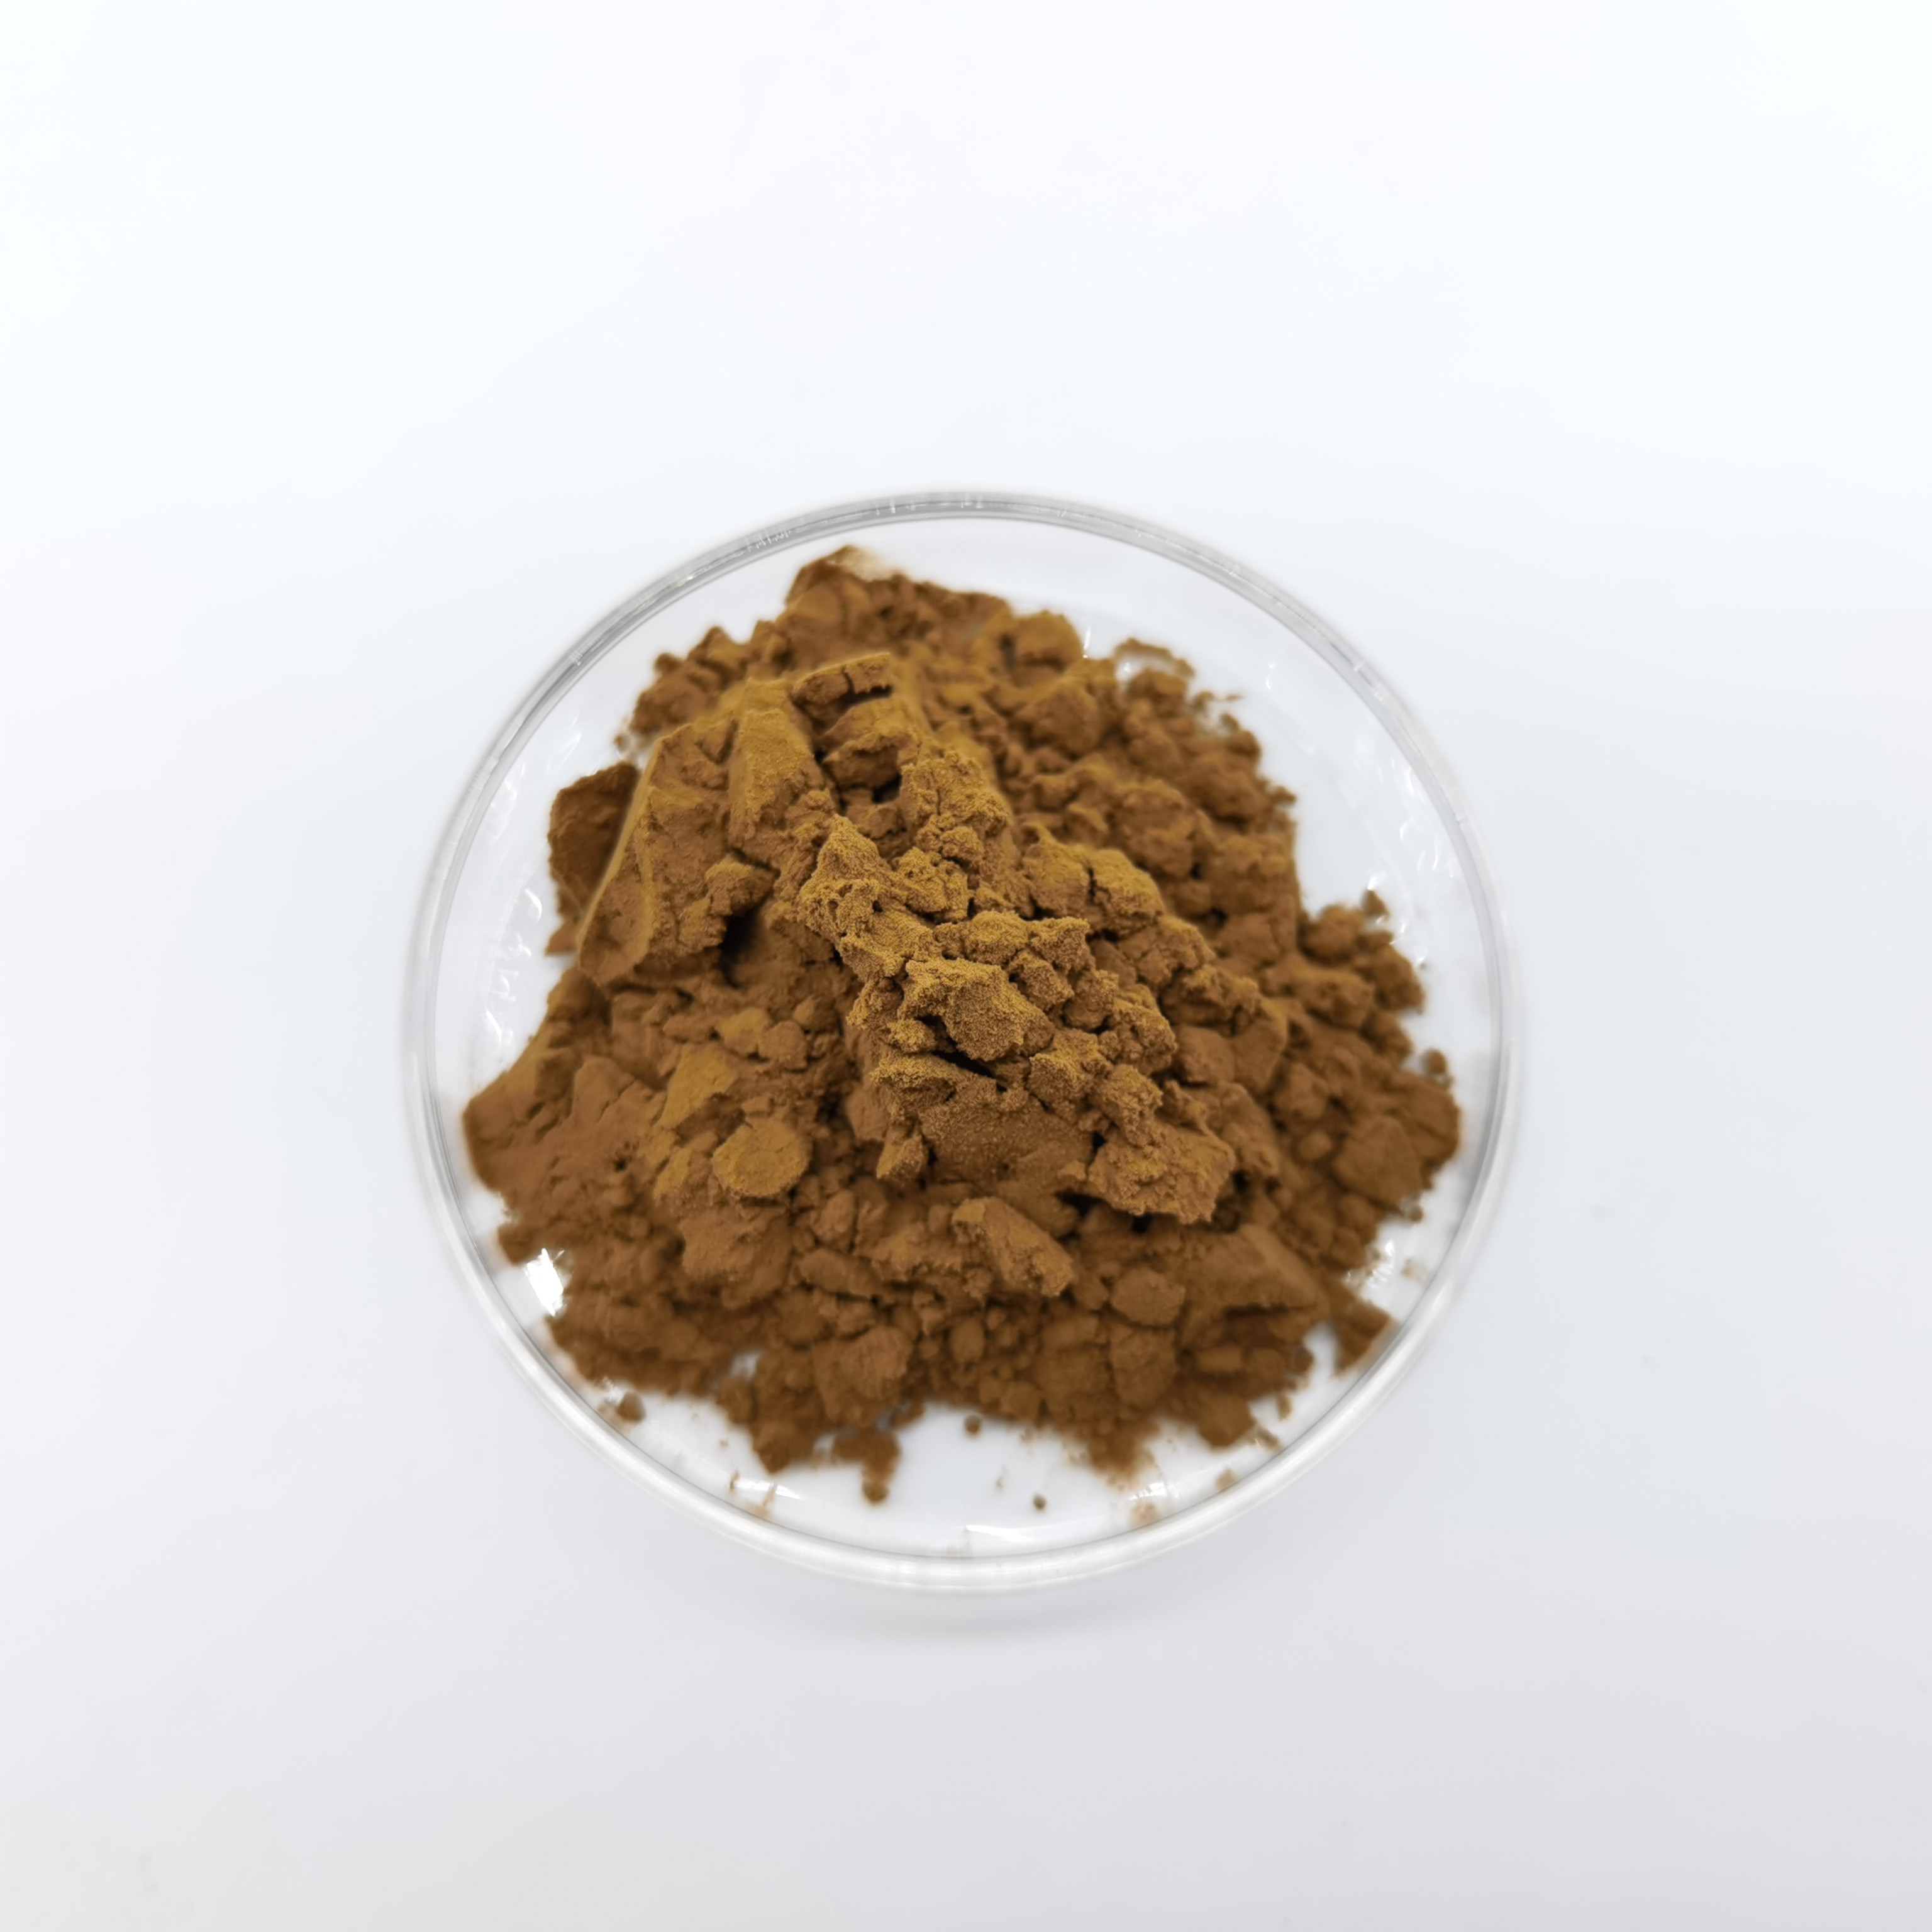 Polvo de extracto de flor de equinácea purpurea natural puro con alta calidad